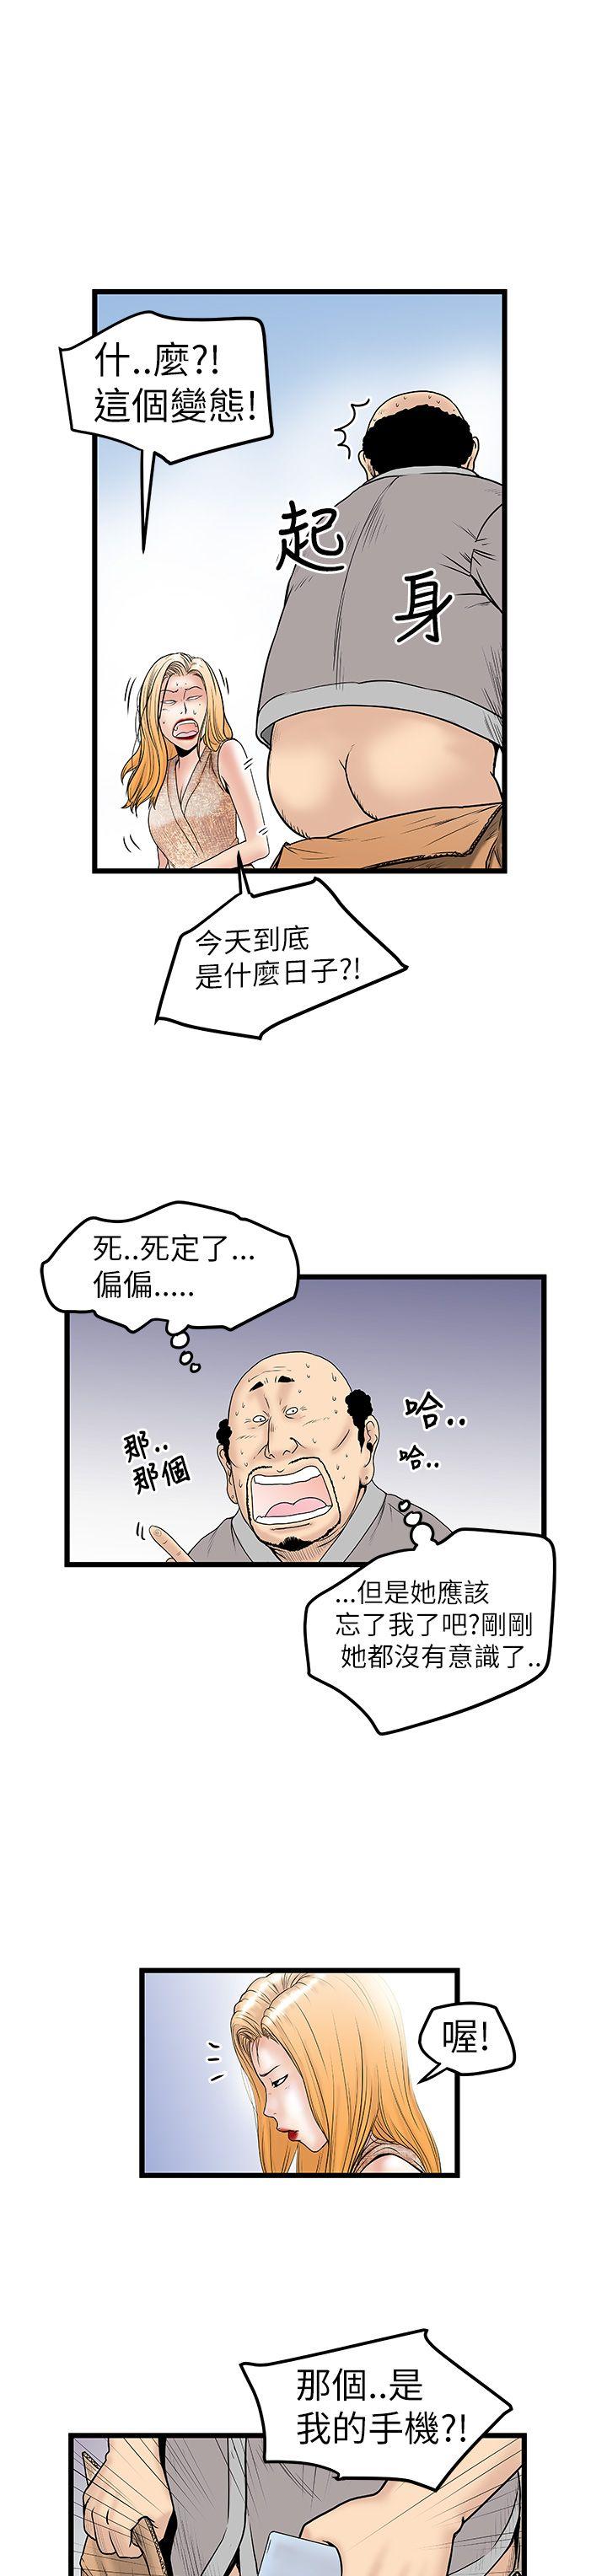 韩国污漫画 想像狂熱 第9话 17